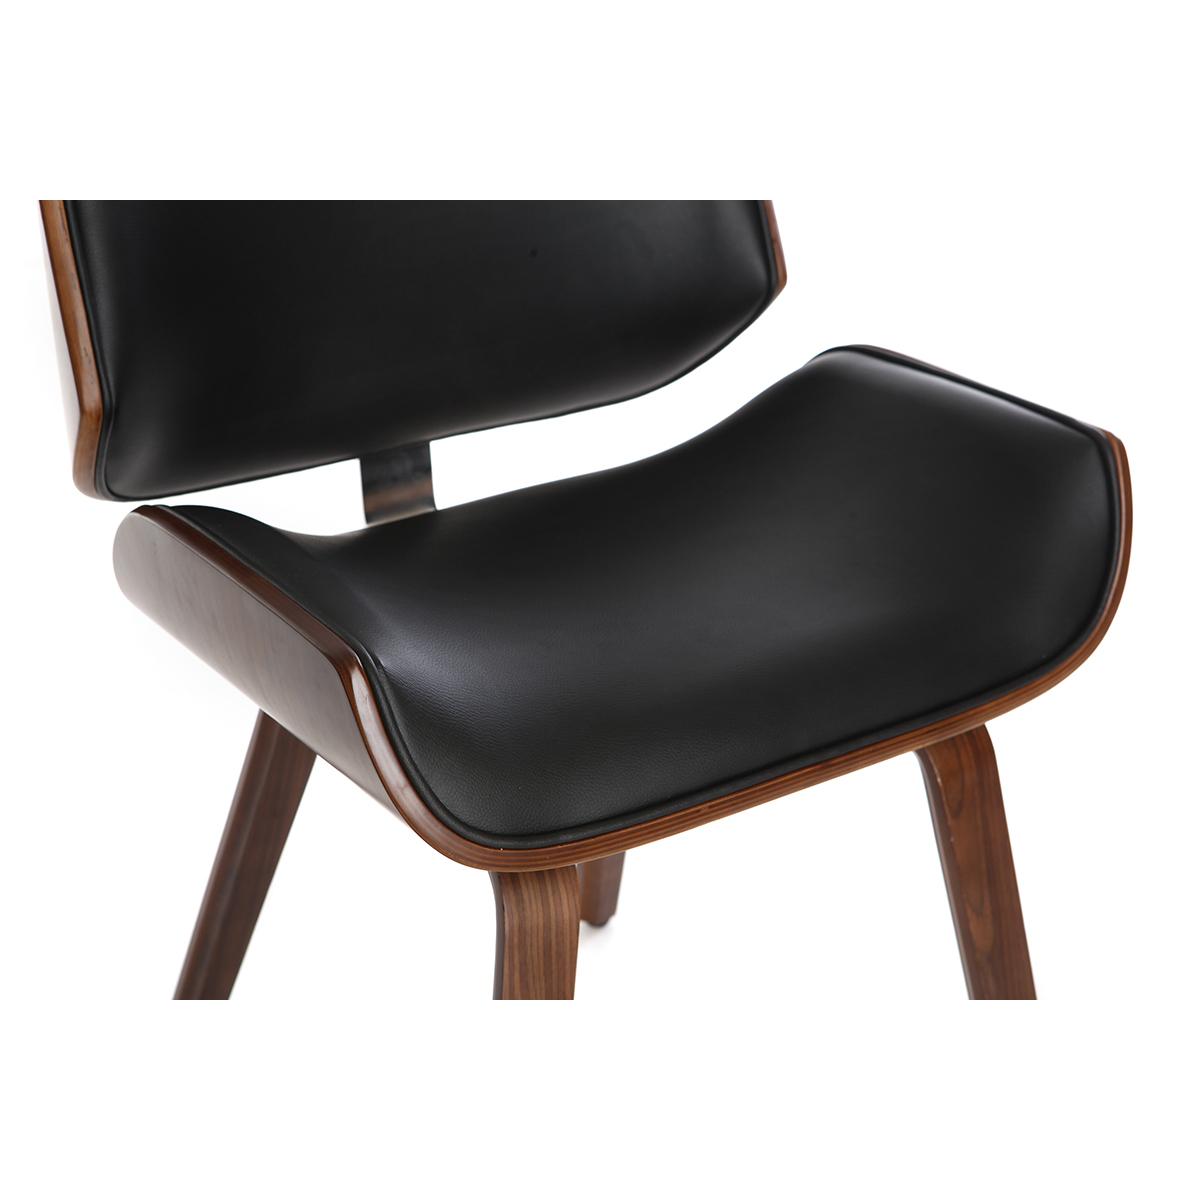 Chaise design blanc et bois clair RUBBENS - Miliboo